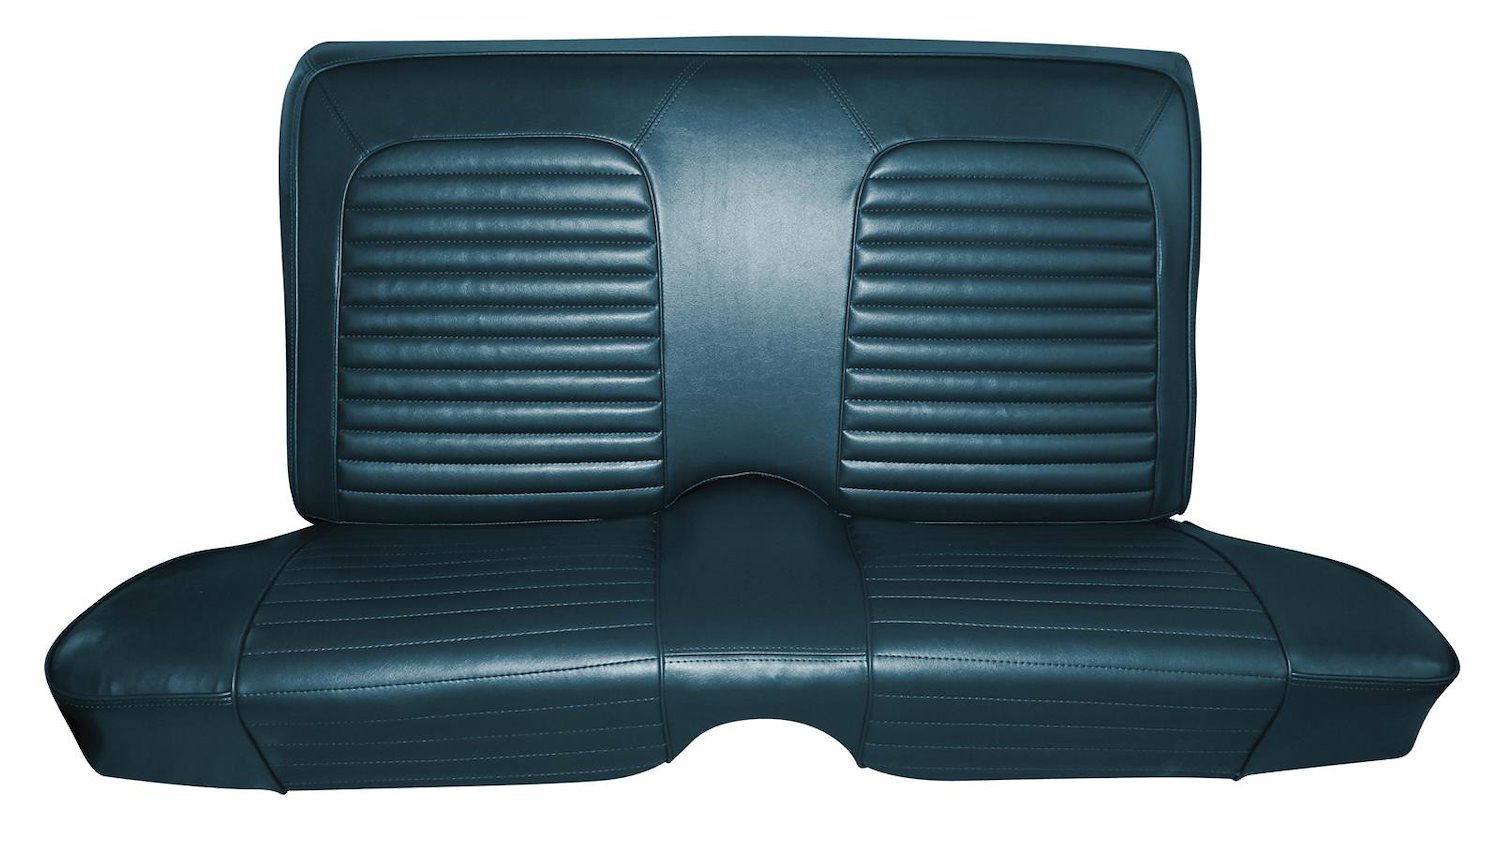 1964 Mercury Comet Caliente 2-Door Hardtop Interior Rear Bench Seat Upholstery Set